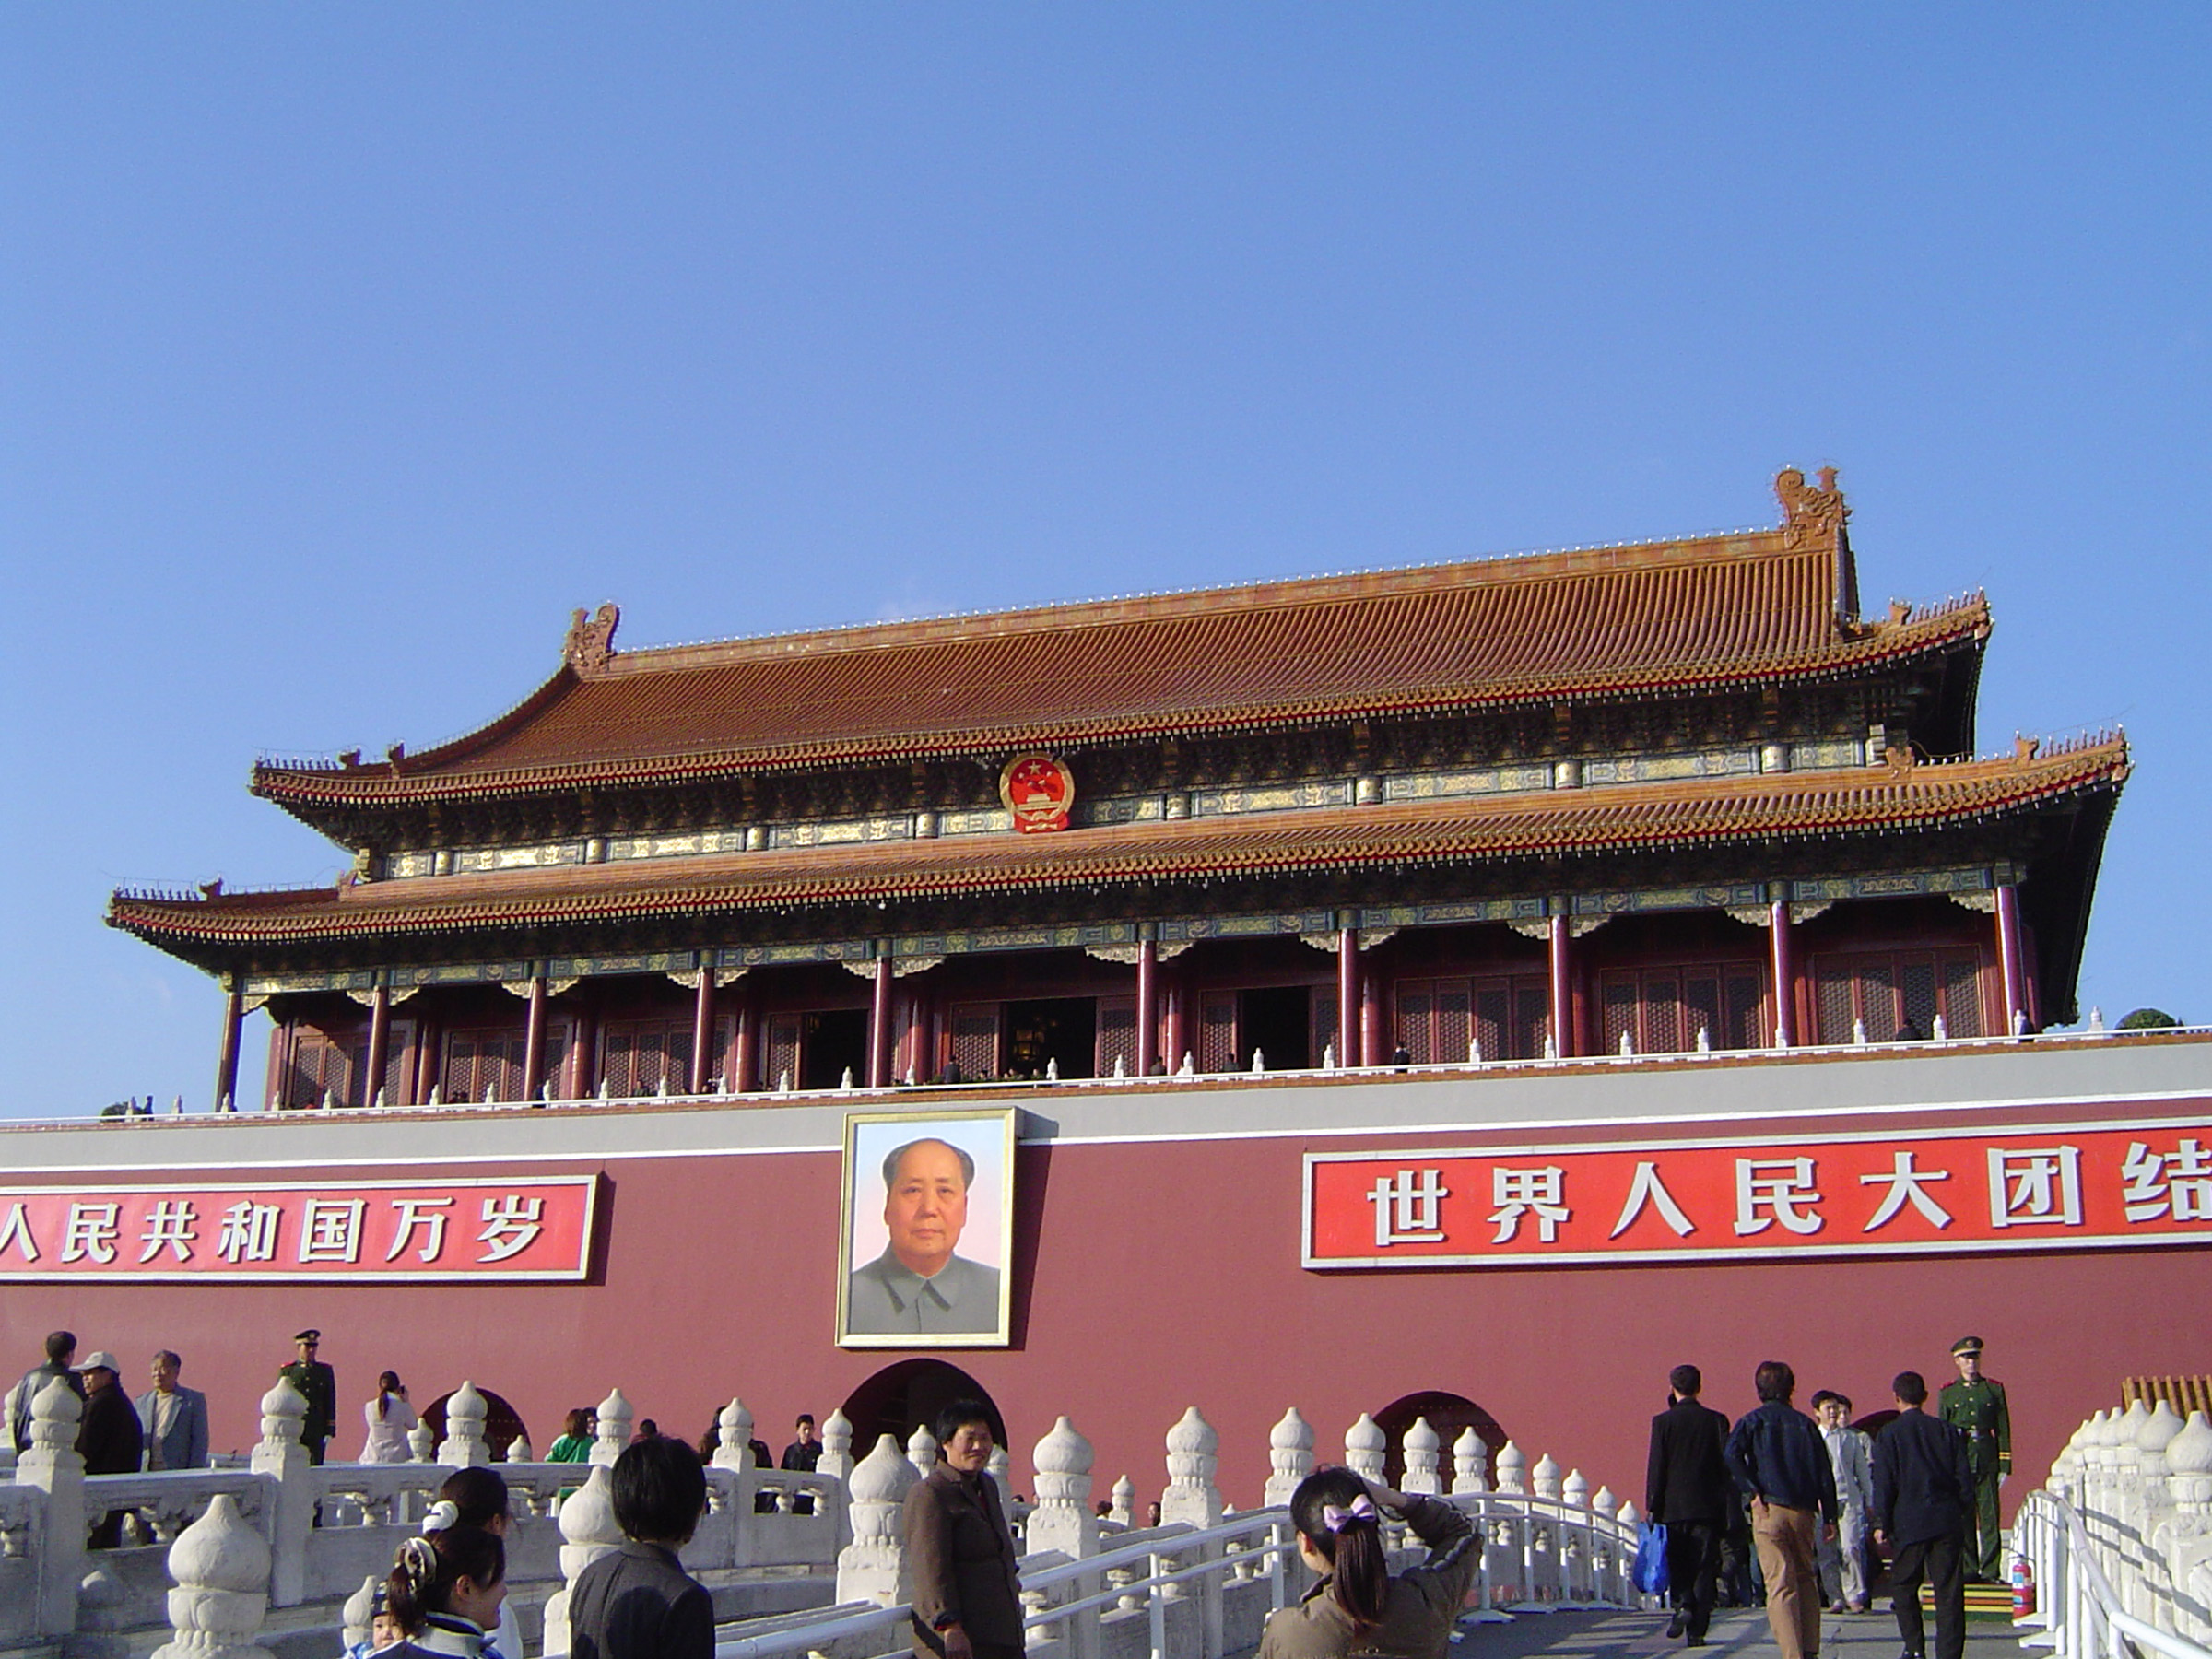 The forbidden city, Beijing